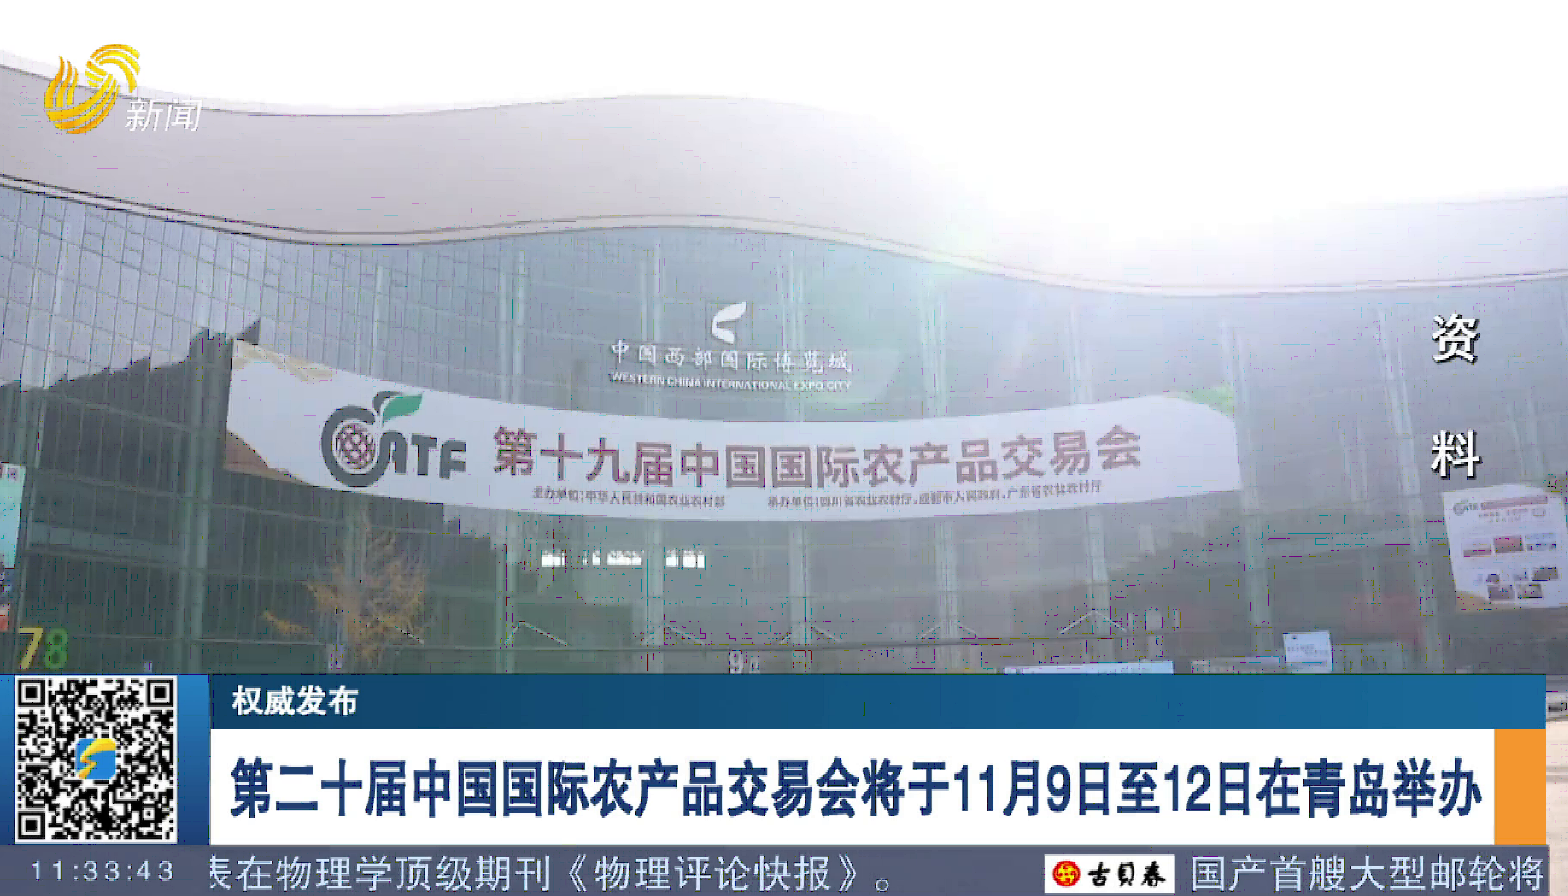 【权威发布】第二十届中国国际农产品交易会将于11月9日至12日在青岛举办